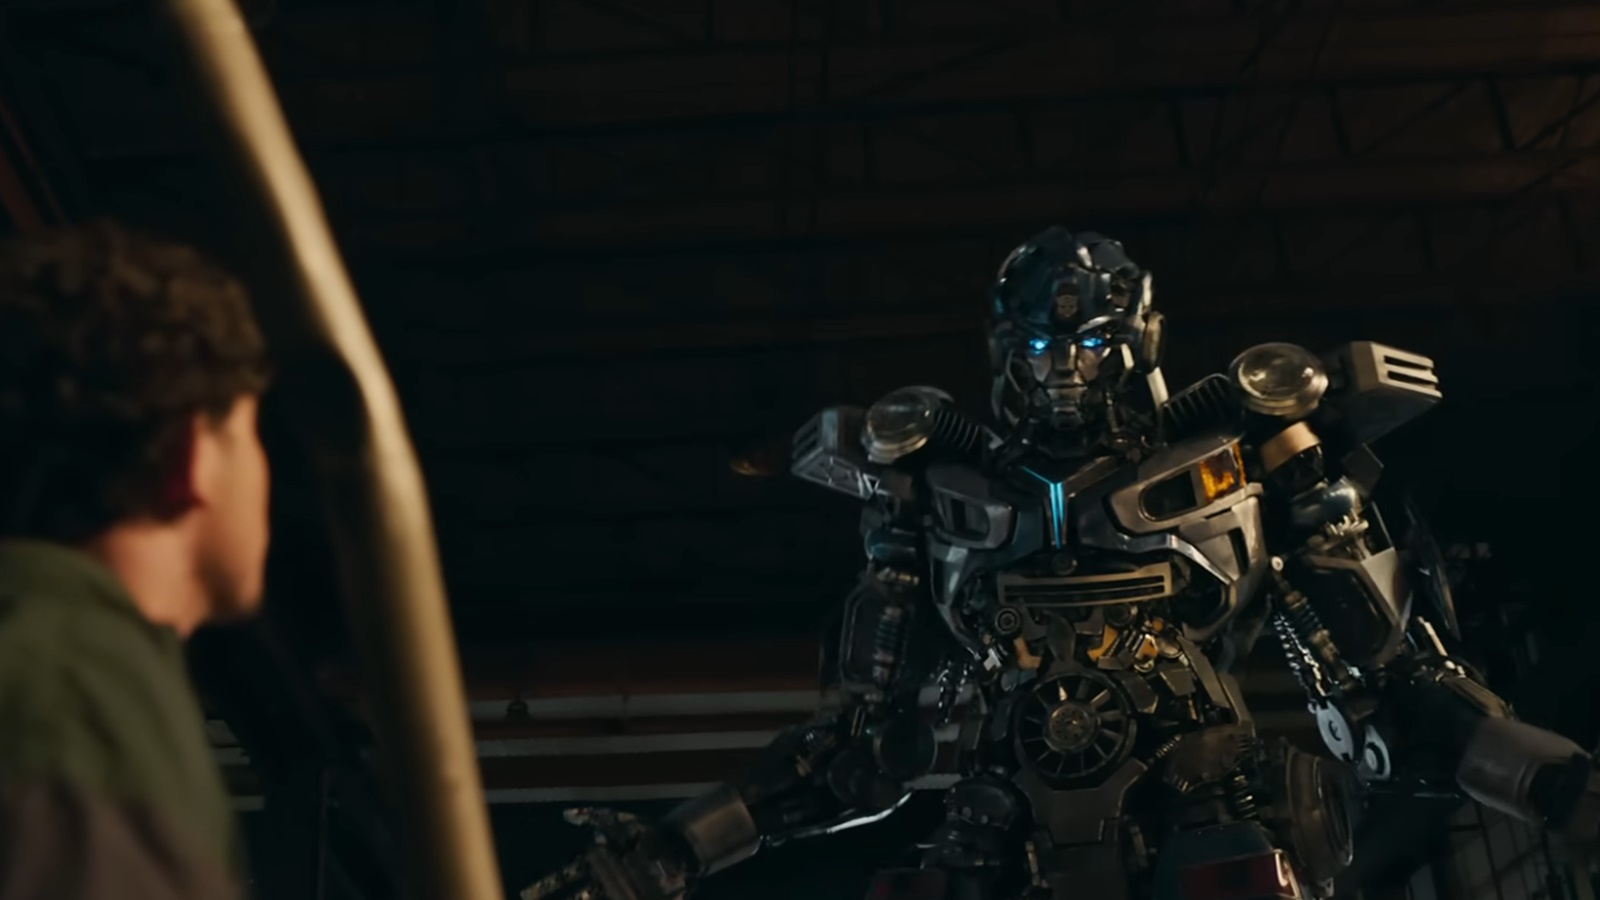 Transformers: Il Risveglio, una featurette mostra il lavoro sul set e presenta i nuovi arrivi nella saga